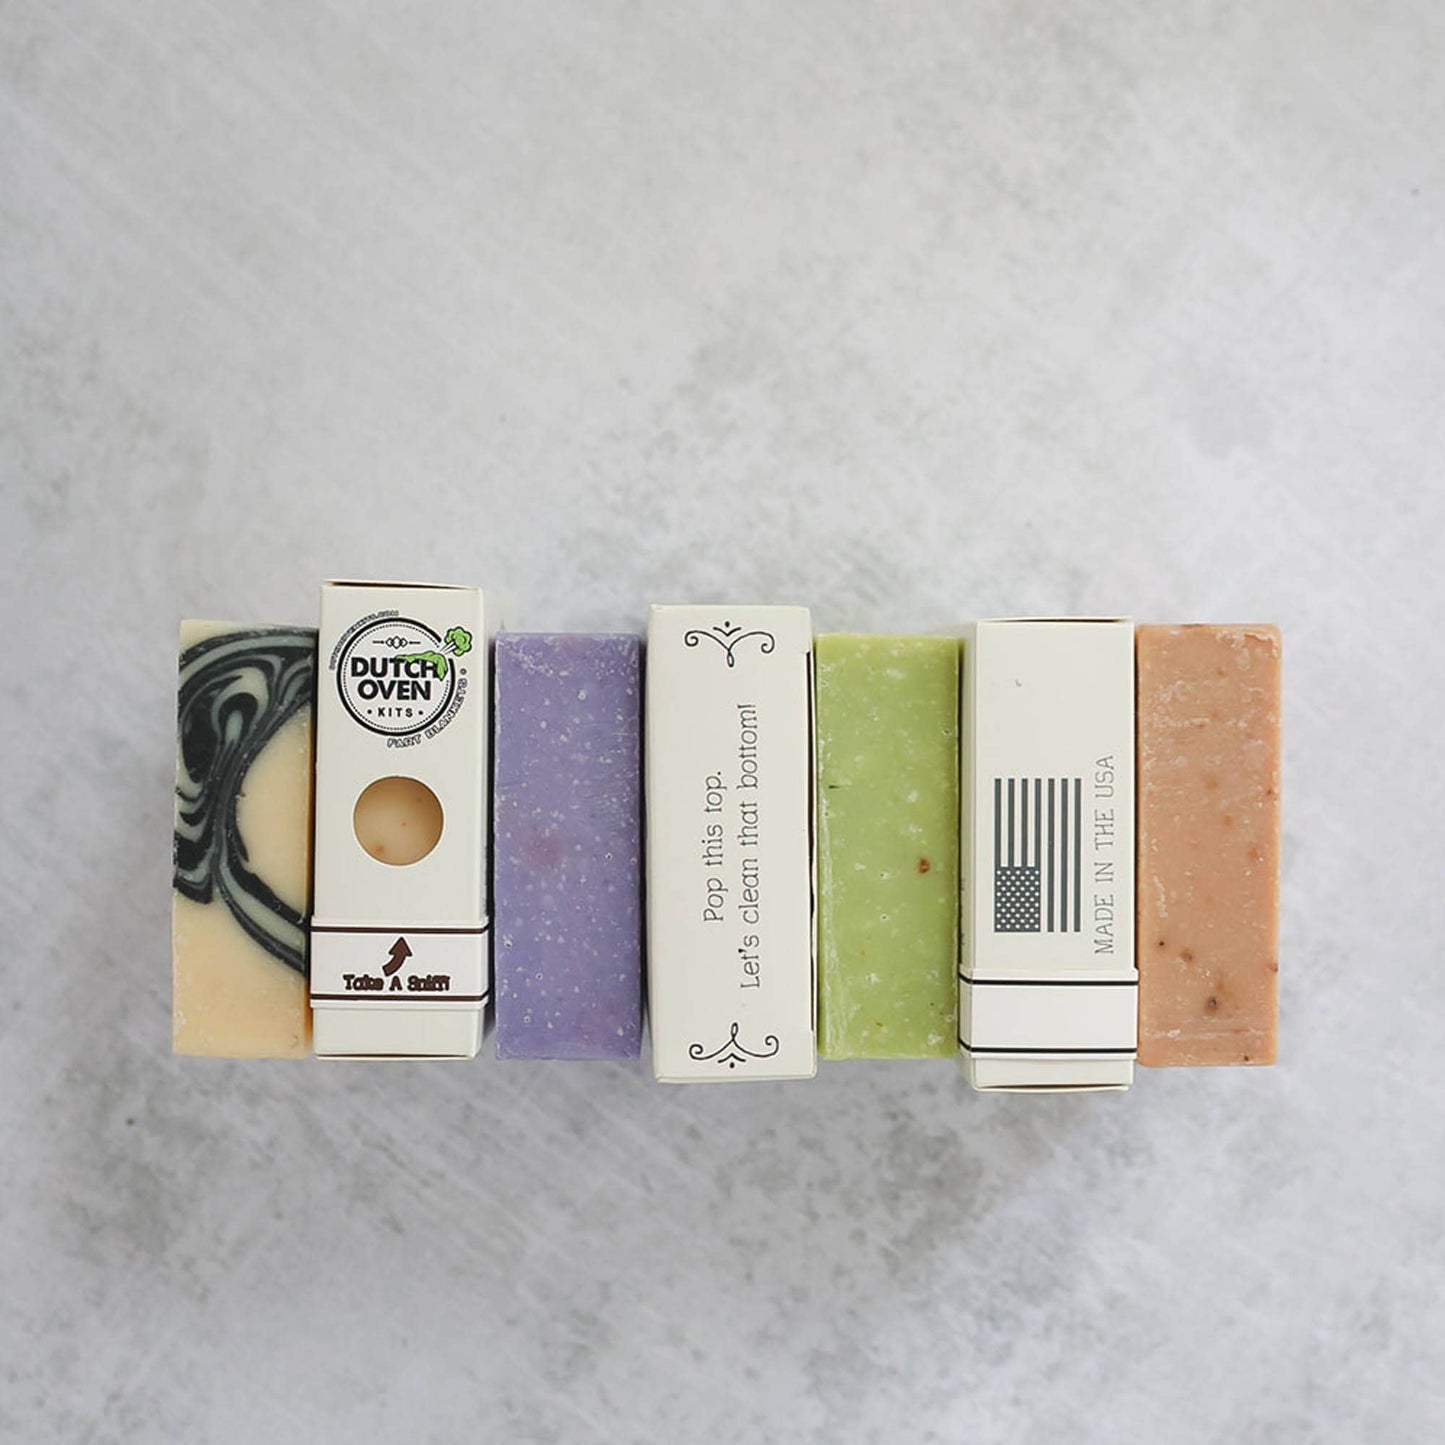 Kits de four hollandais - Lavande citronnelle - Barres de savon naturel Shart Wash 5 oz